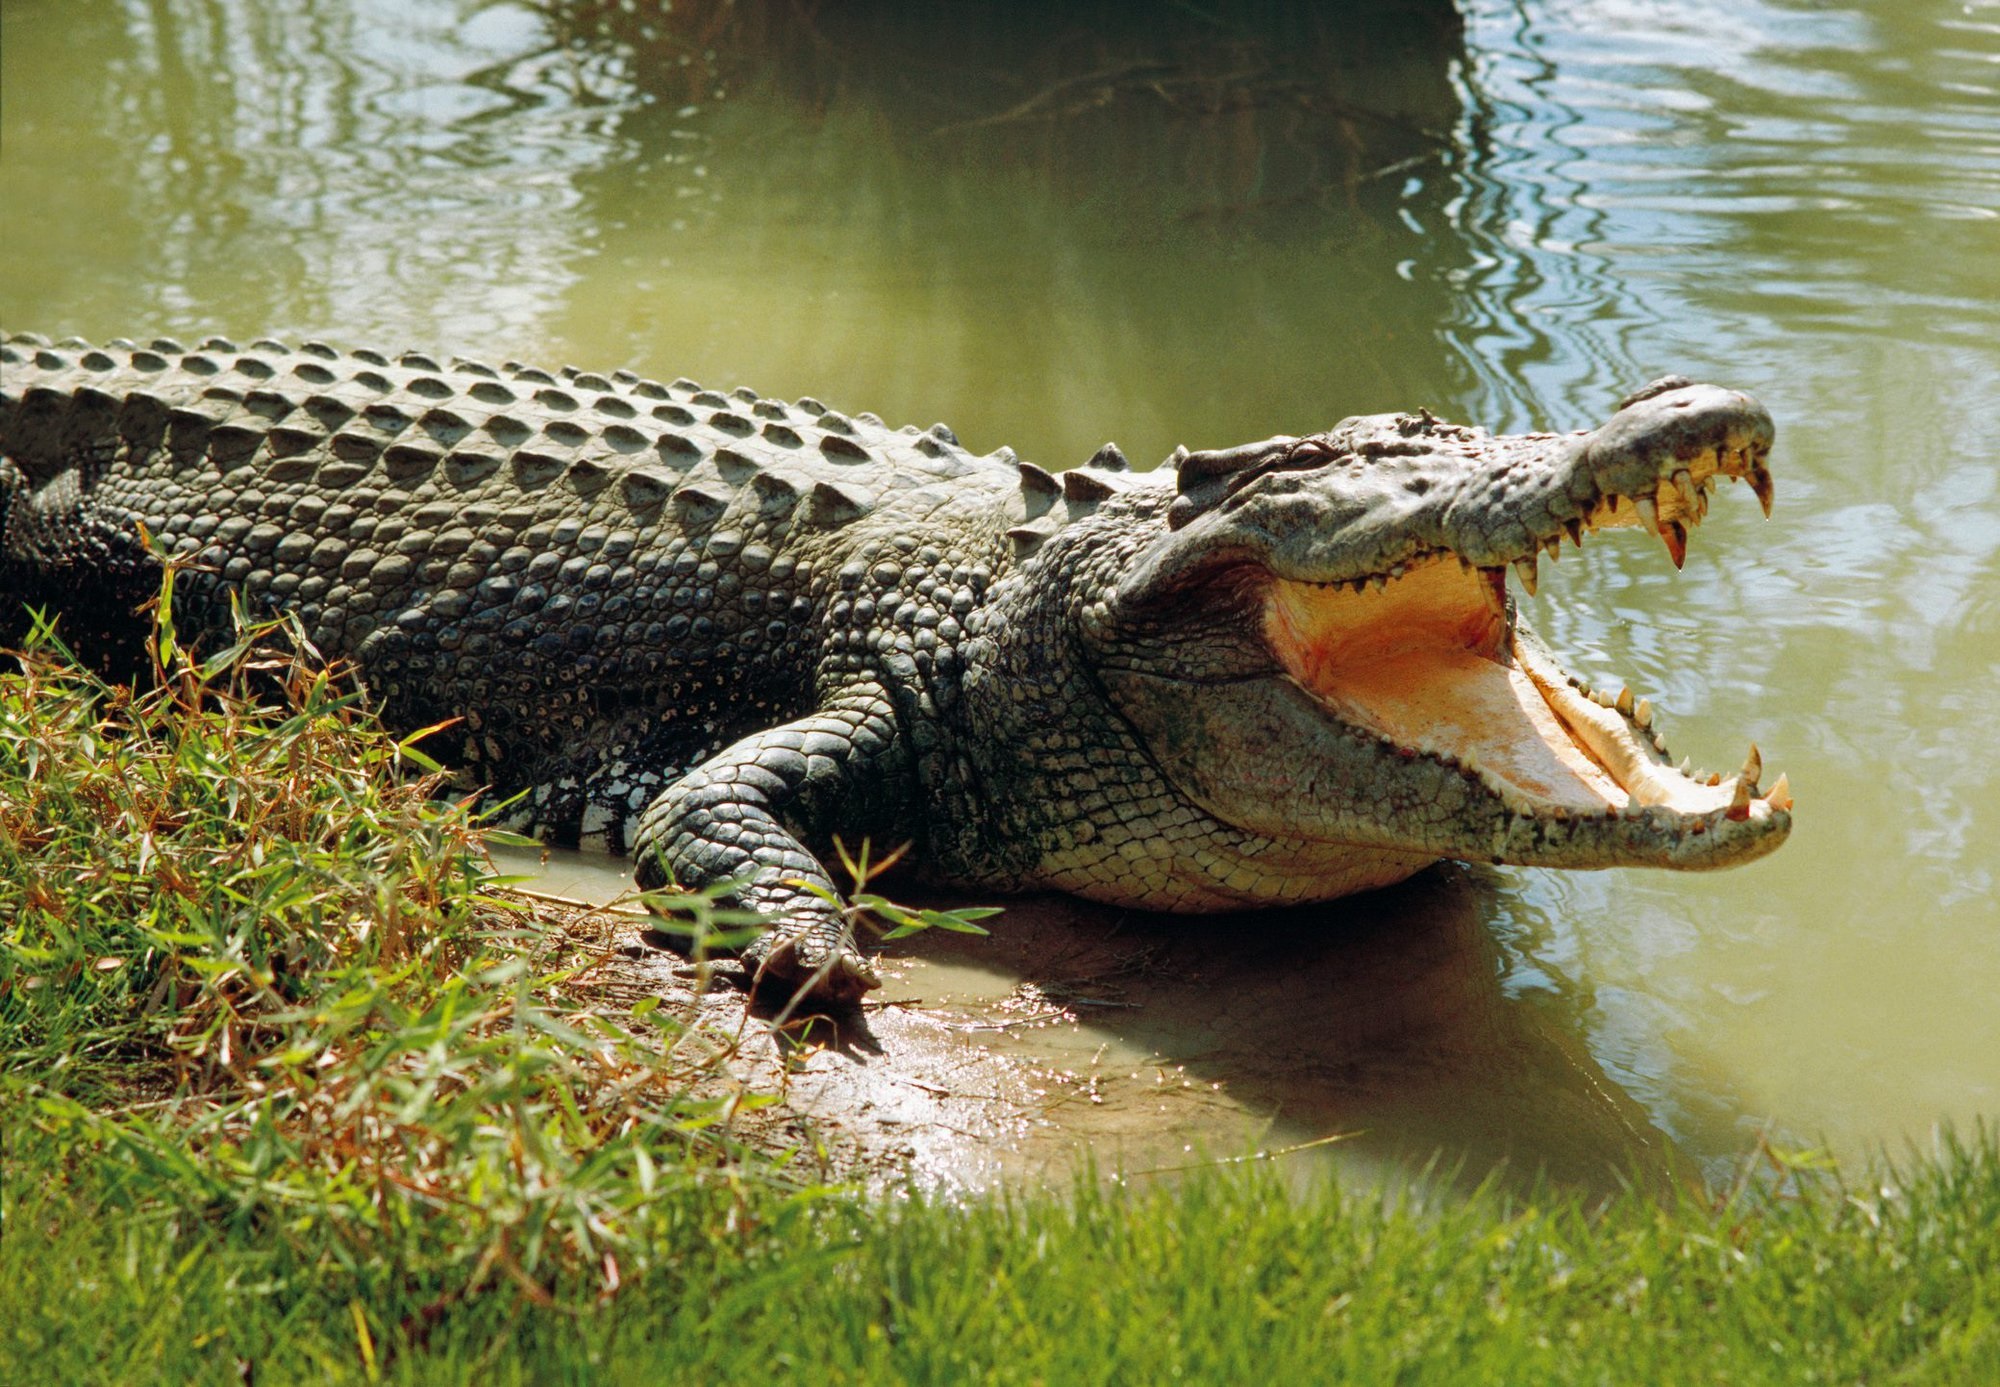 Bé gái 12 tuổi đi bơi bị cá sấu tấn công: Thi thể nổi trên sông sau 2 ngày tìm kiếm  - Ảnh 1